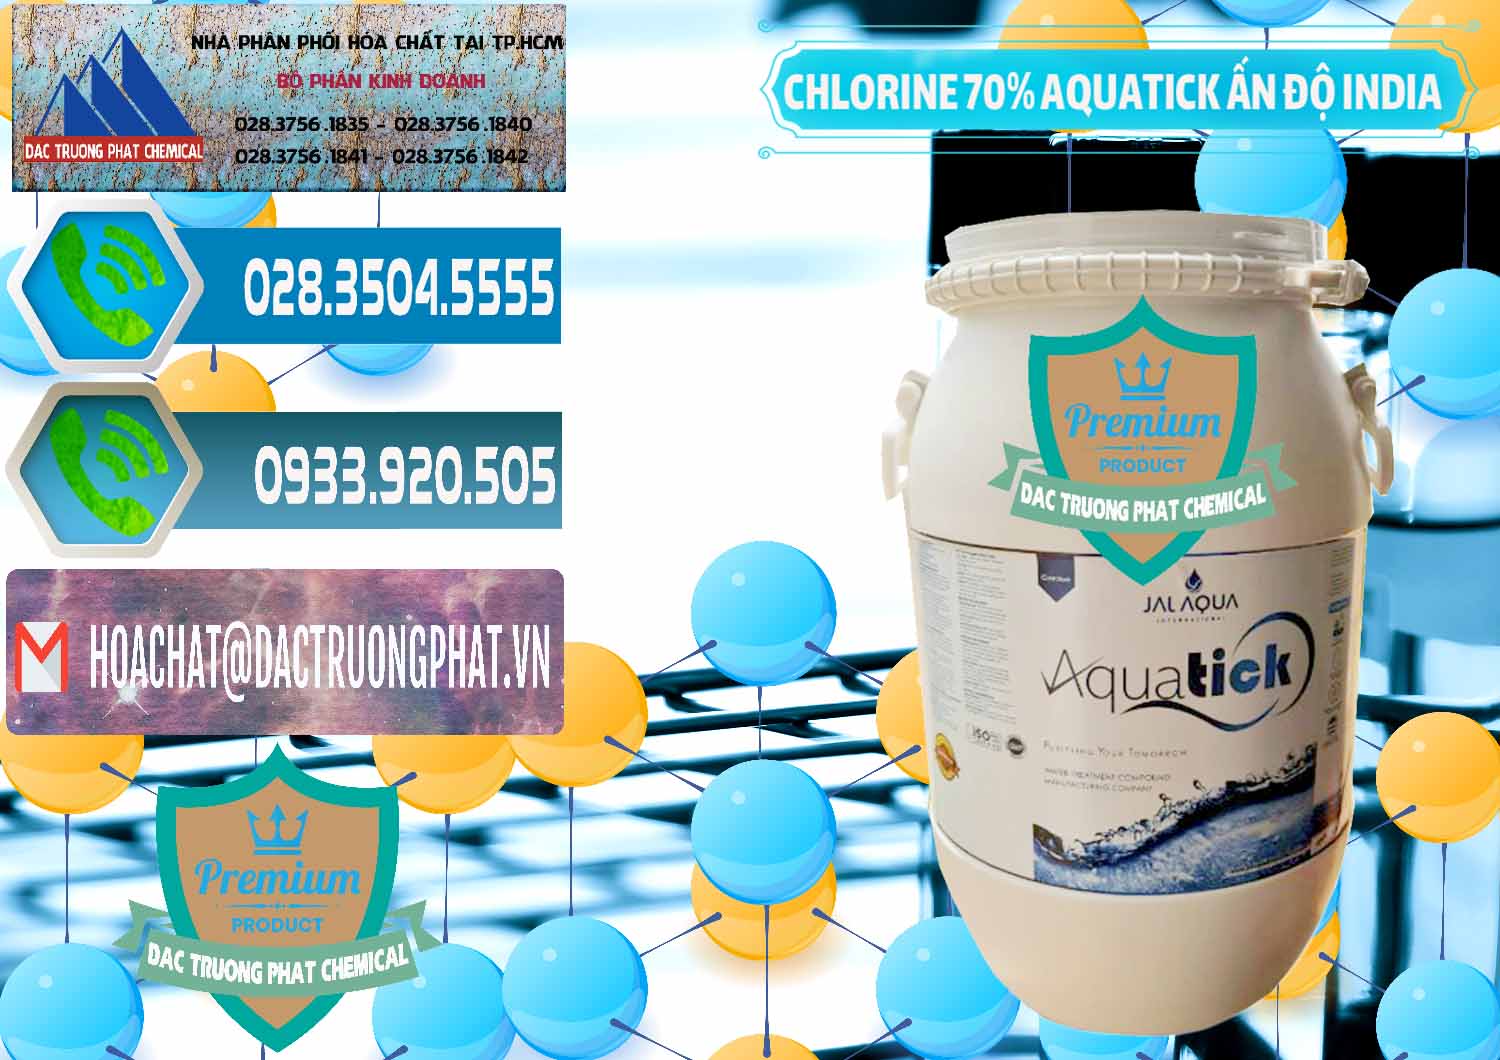 Nơi cung cấp & bán Chlorine – Clorin 70% Aquatick Jal Aqua Ấn Độ India - 0215 - Đơn vị nhập khẩu & cung cấp hóa chất tại TP.HCM - congtyhoachat.net